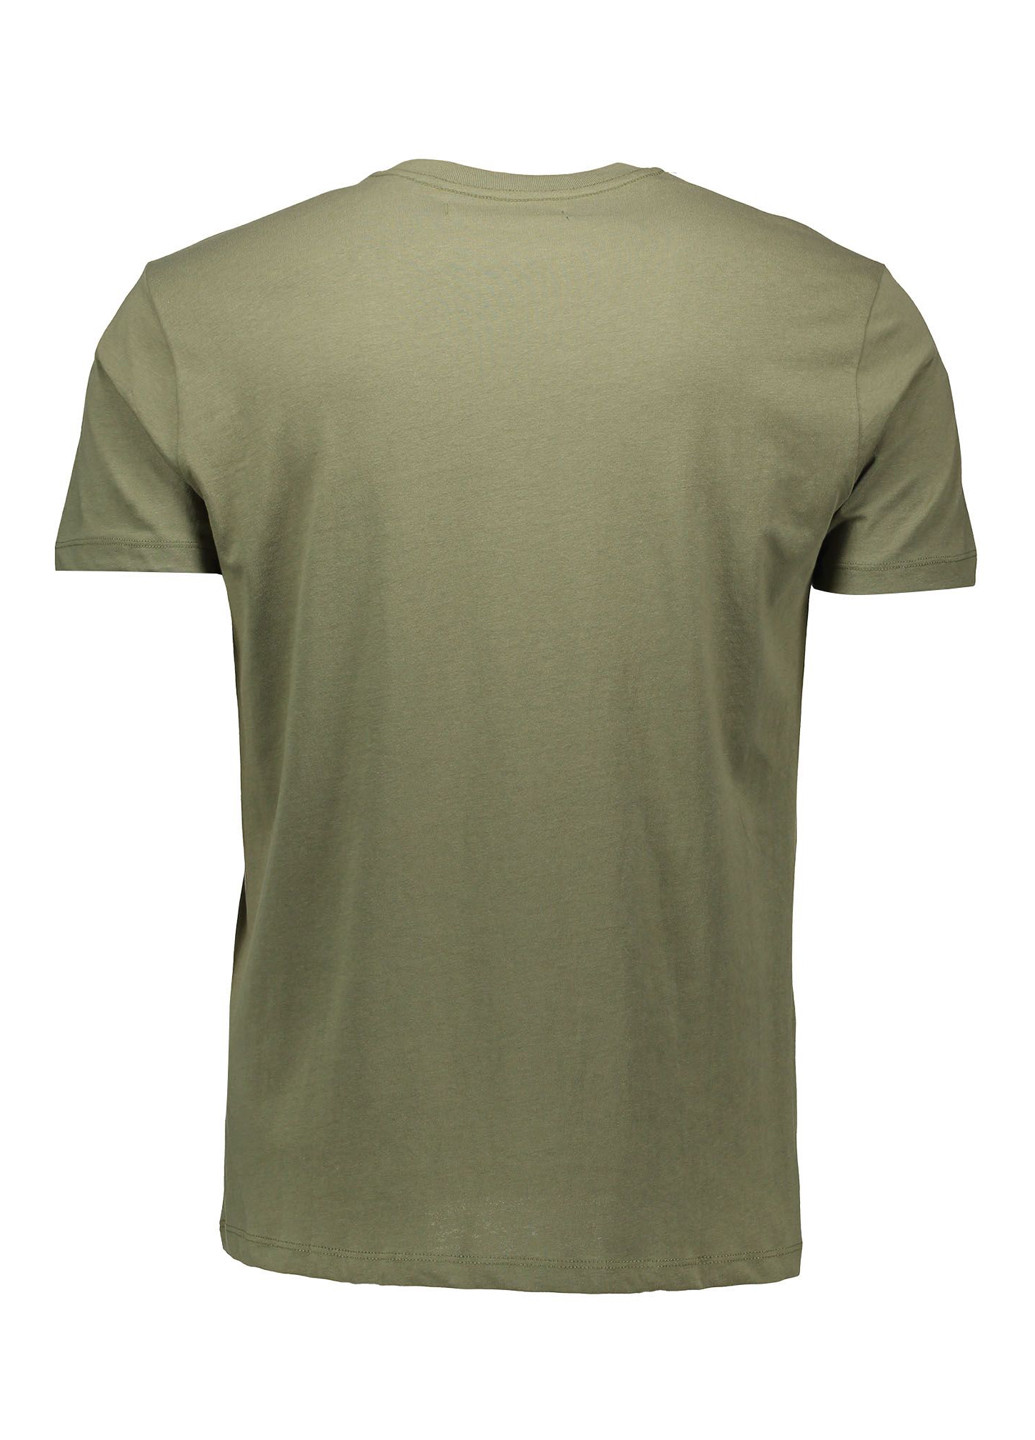 Хаки (оливковая) футболка с коротким рукавом Piazza Italia